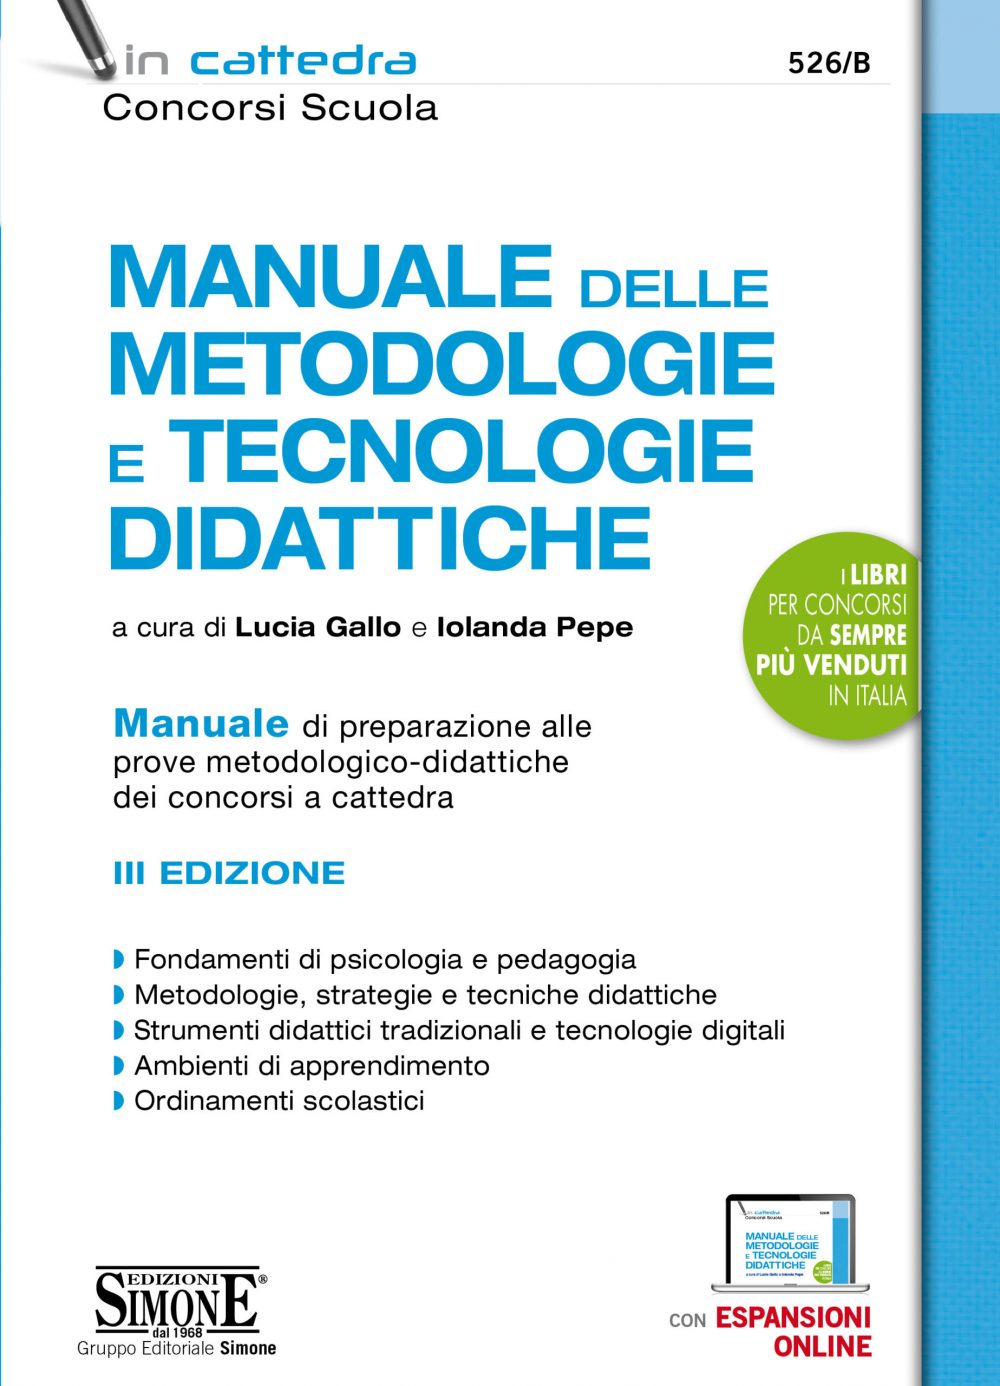 Manuale delle metodologie e tecnologie didattiche